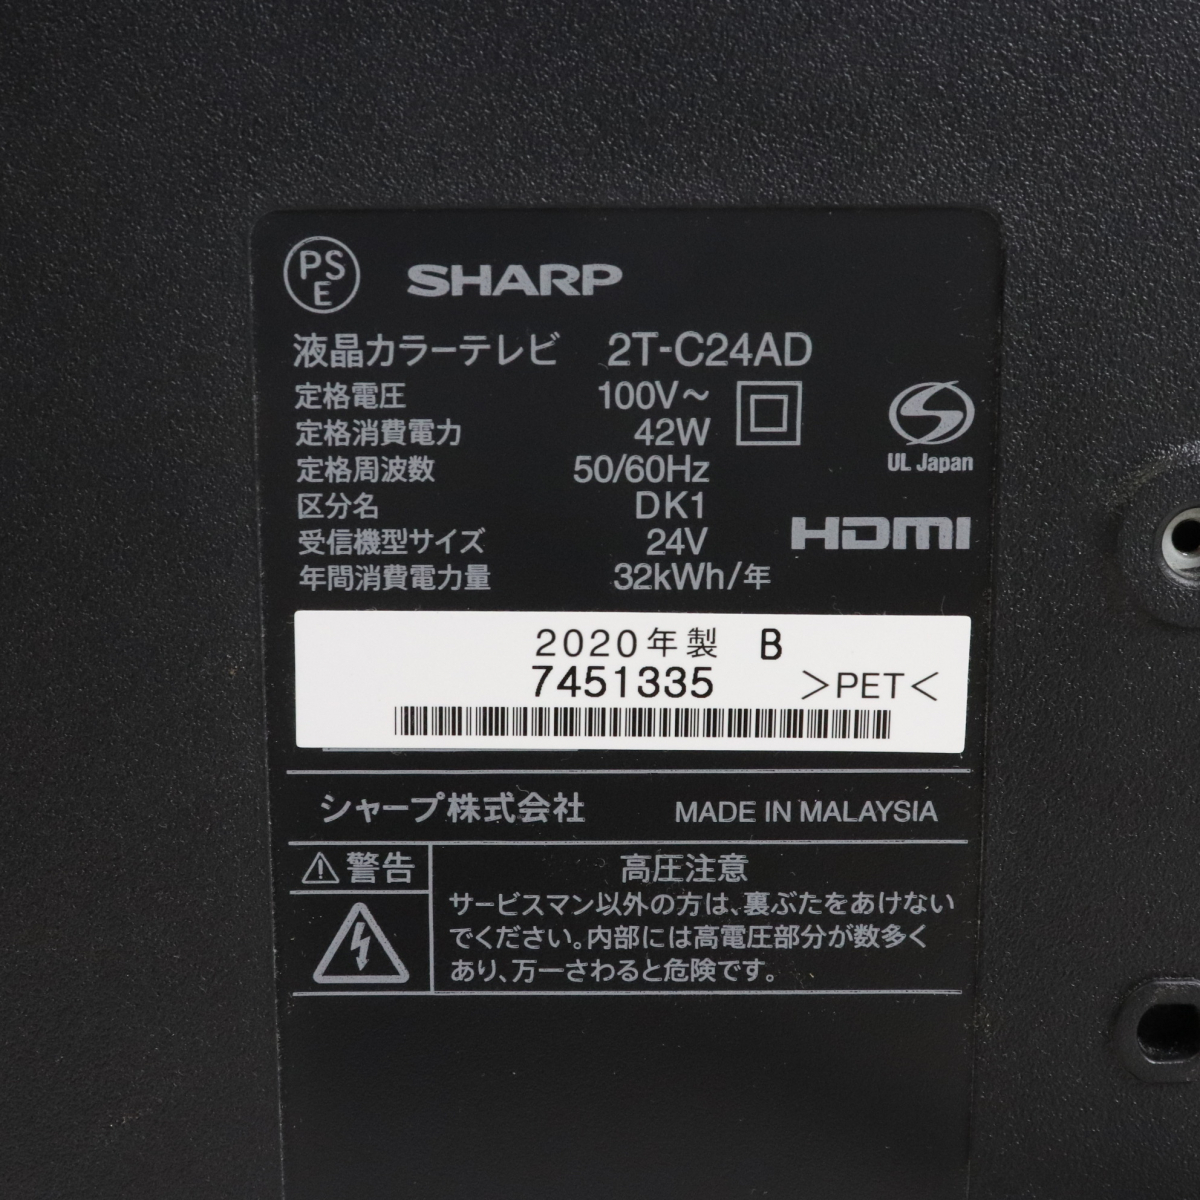 SHARP 2T-C24AD AQUOS シャープ アクオス 液晶カラーテレビ 2020年製